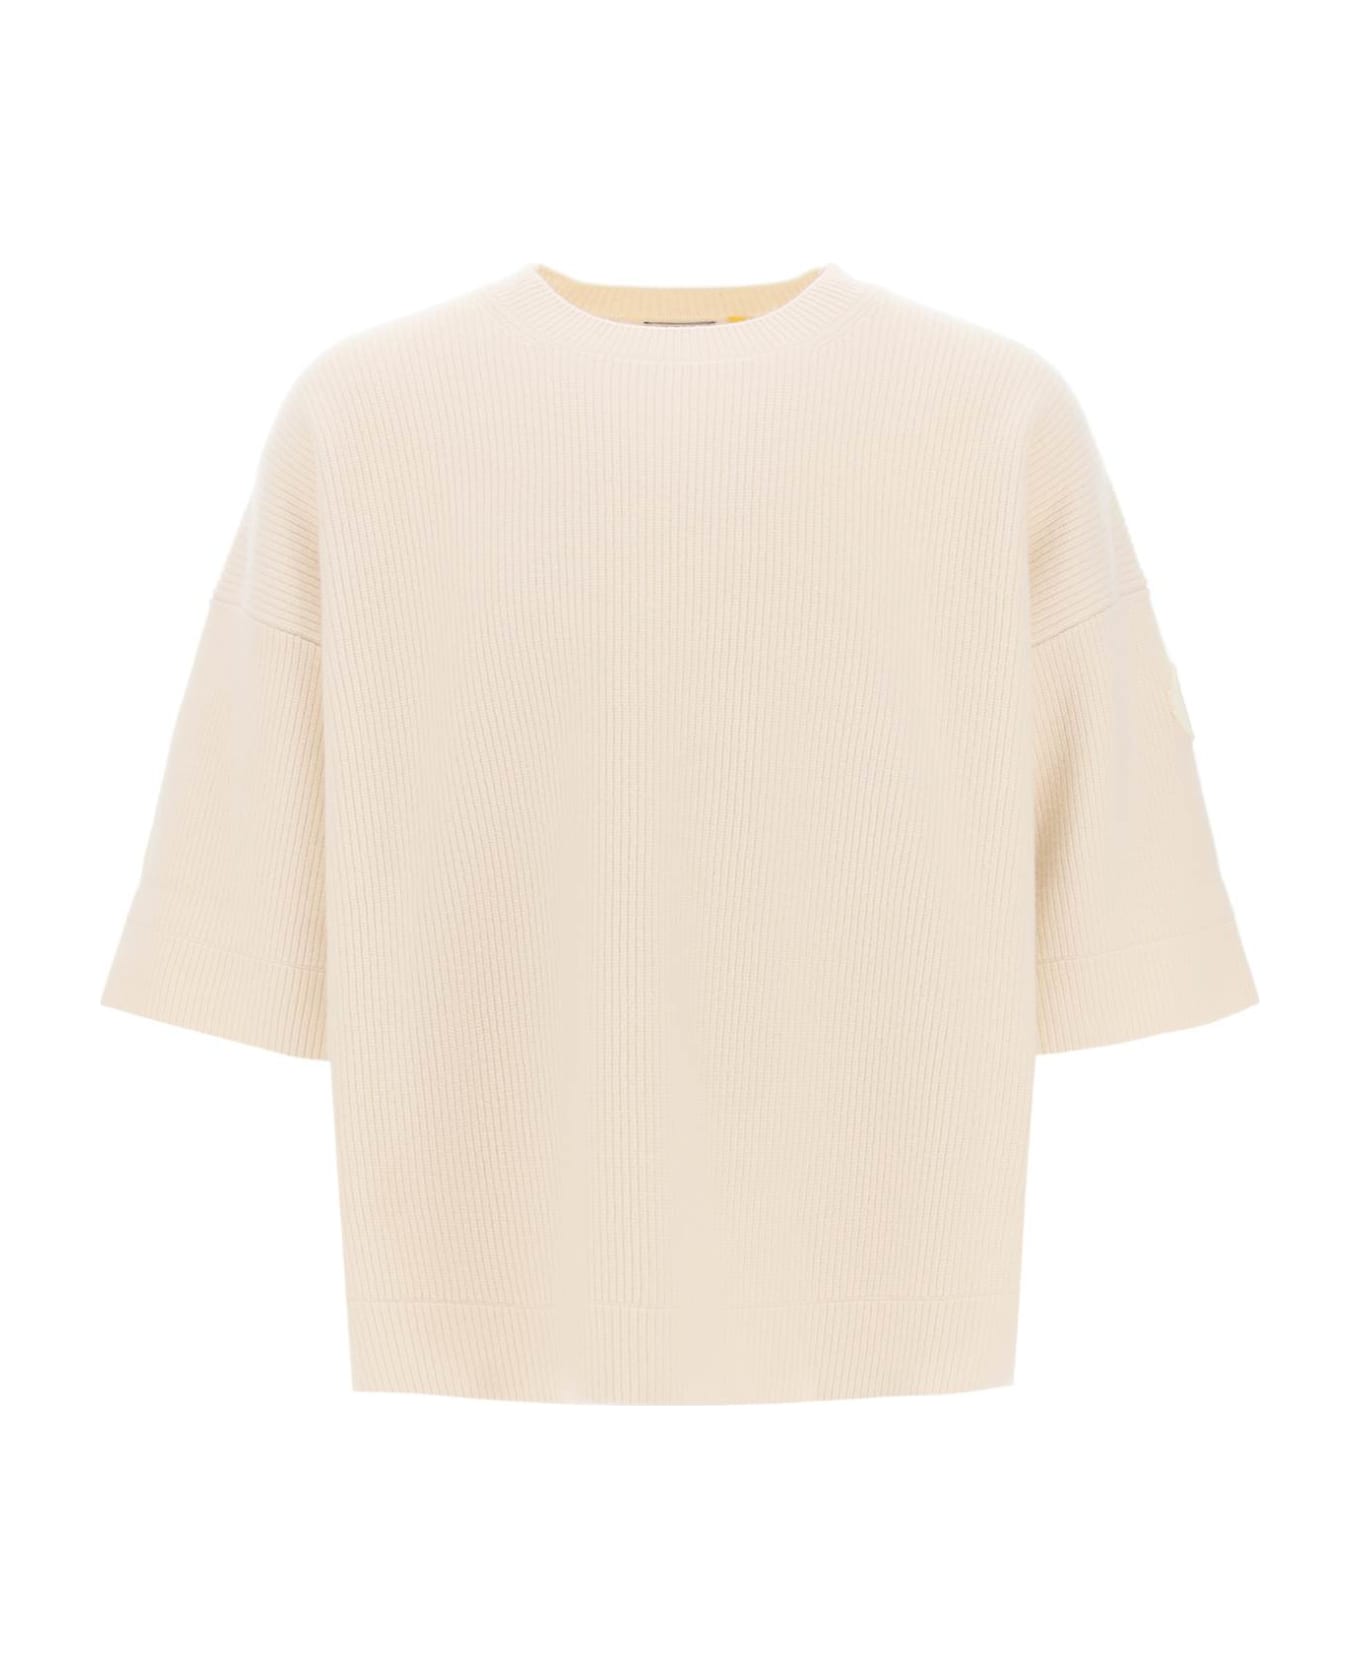 Moncler Genius Short-sleeved Wool Sweater - White ニットウェア